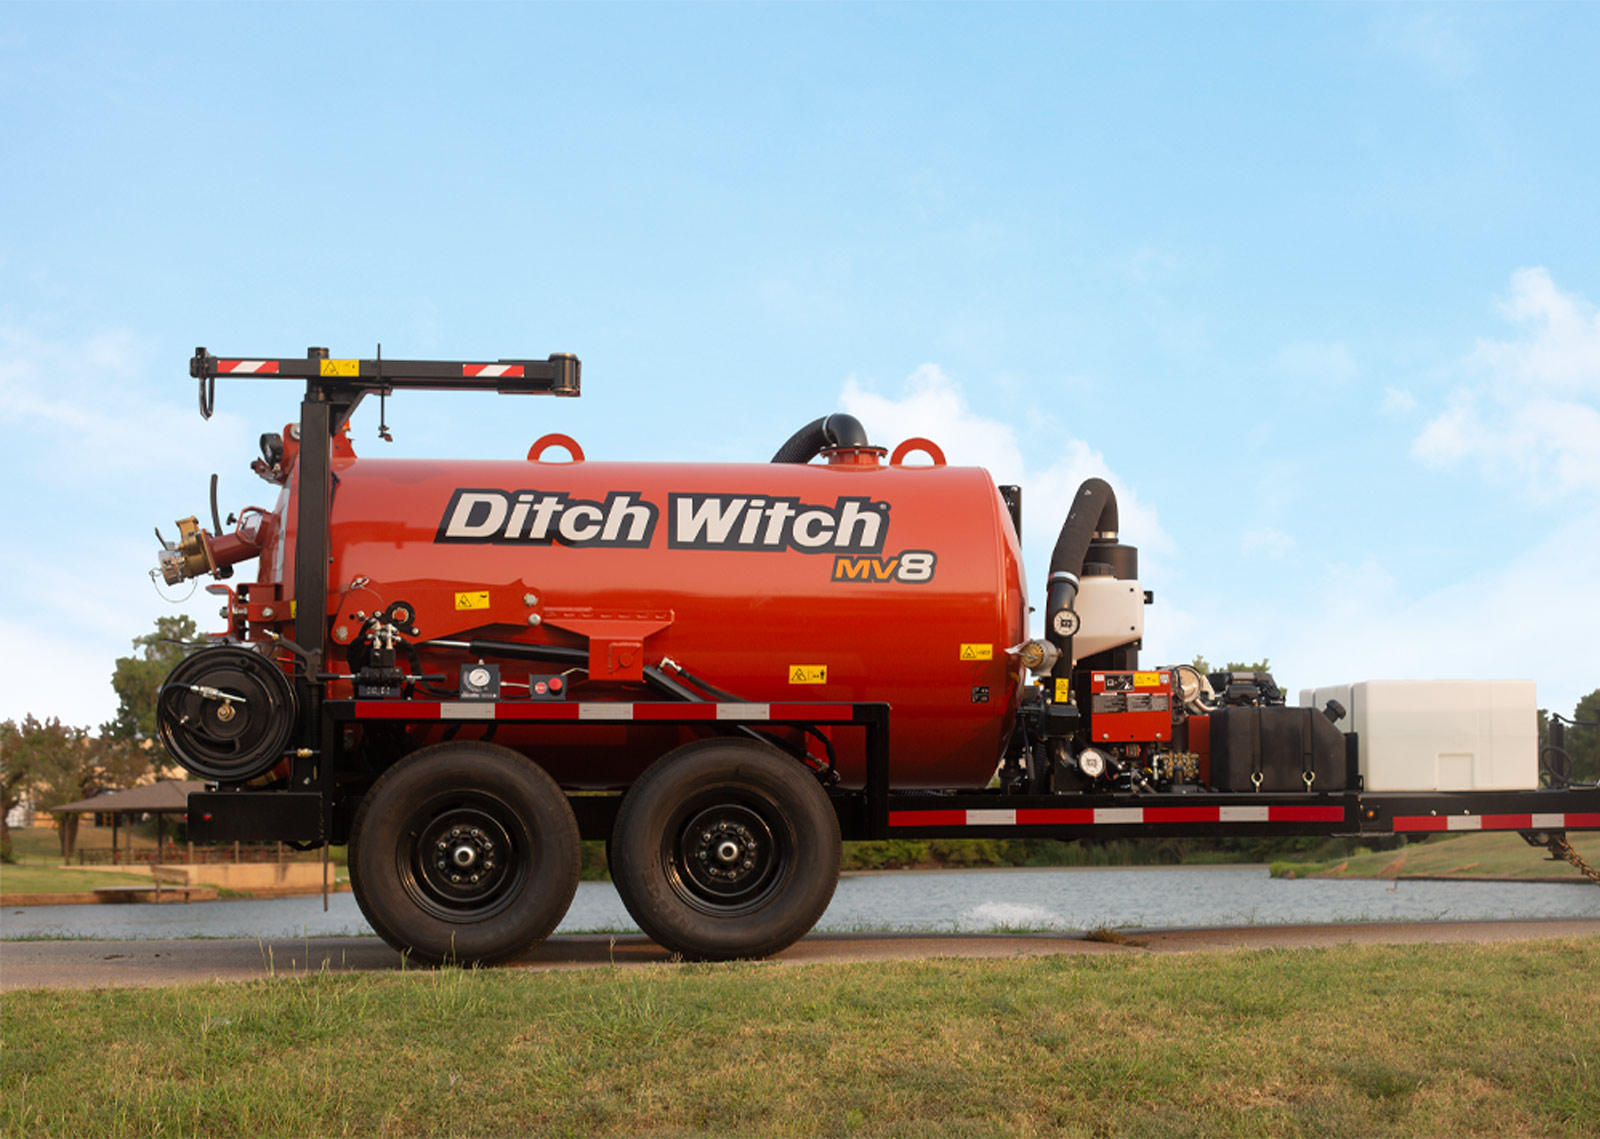 MV8 Ditch Witch